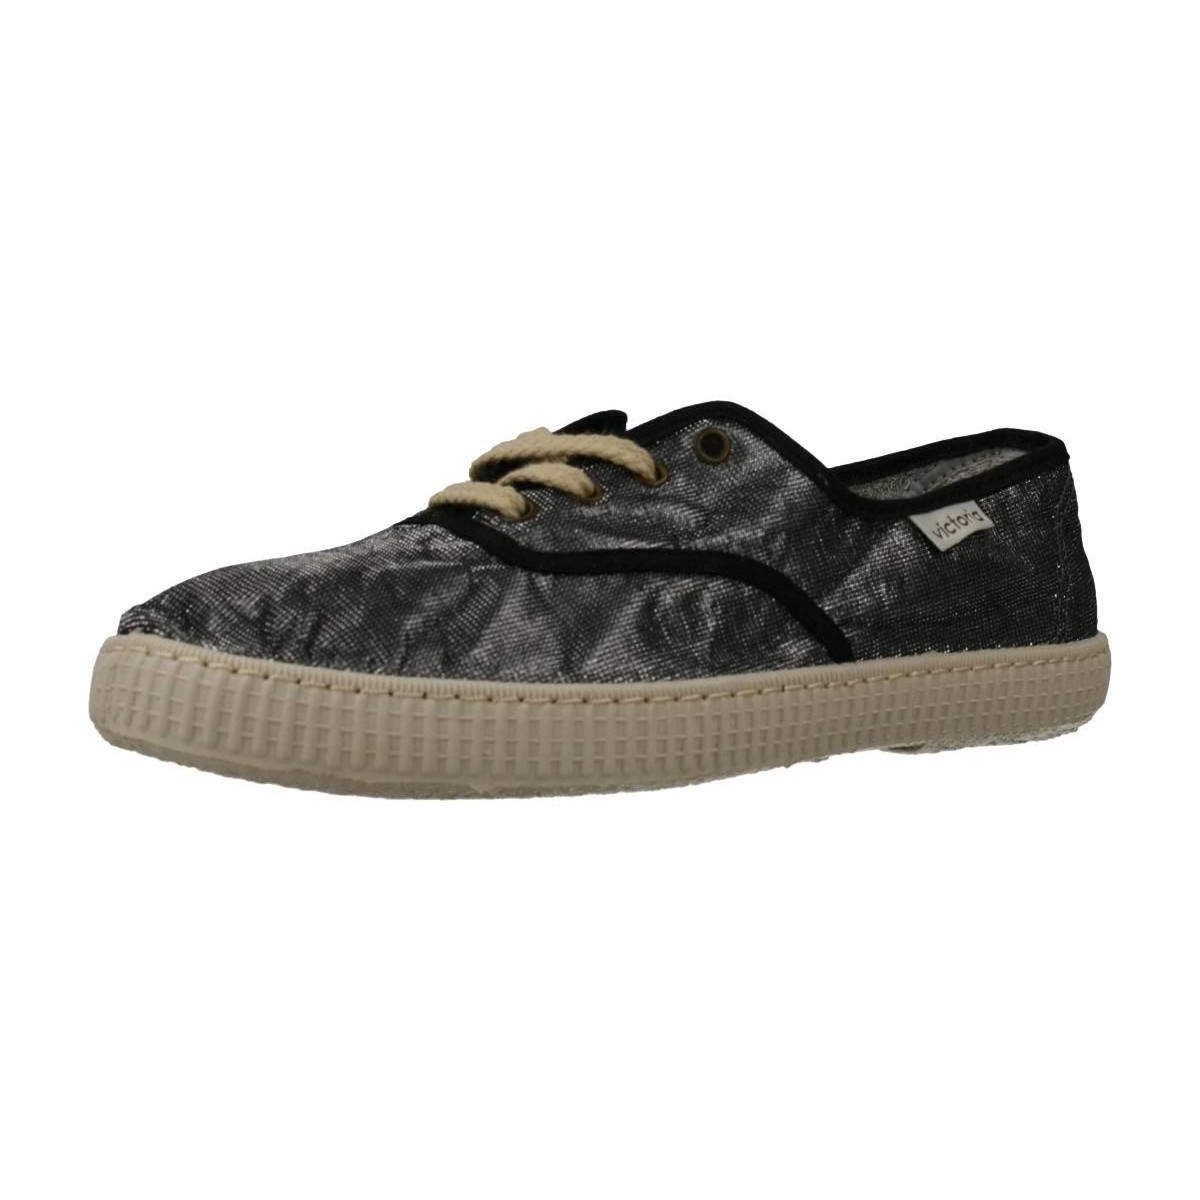 Schuhe Damen Sneaker Victoria 116716 Silbern